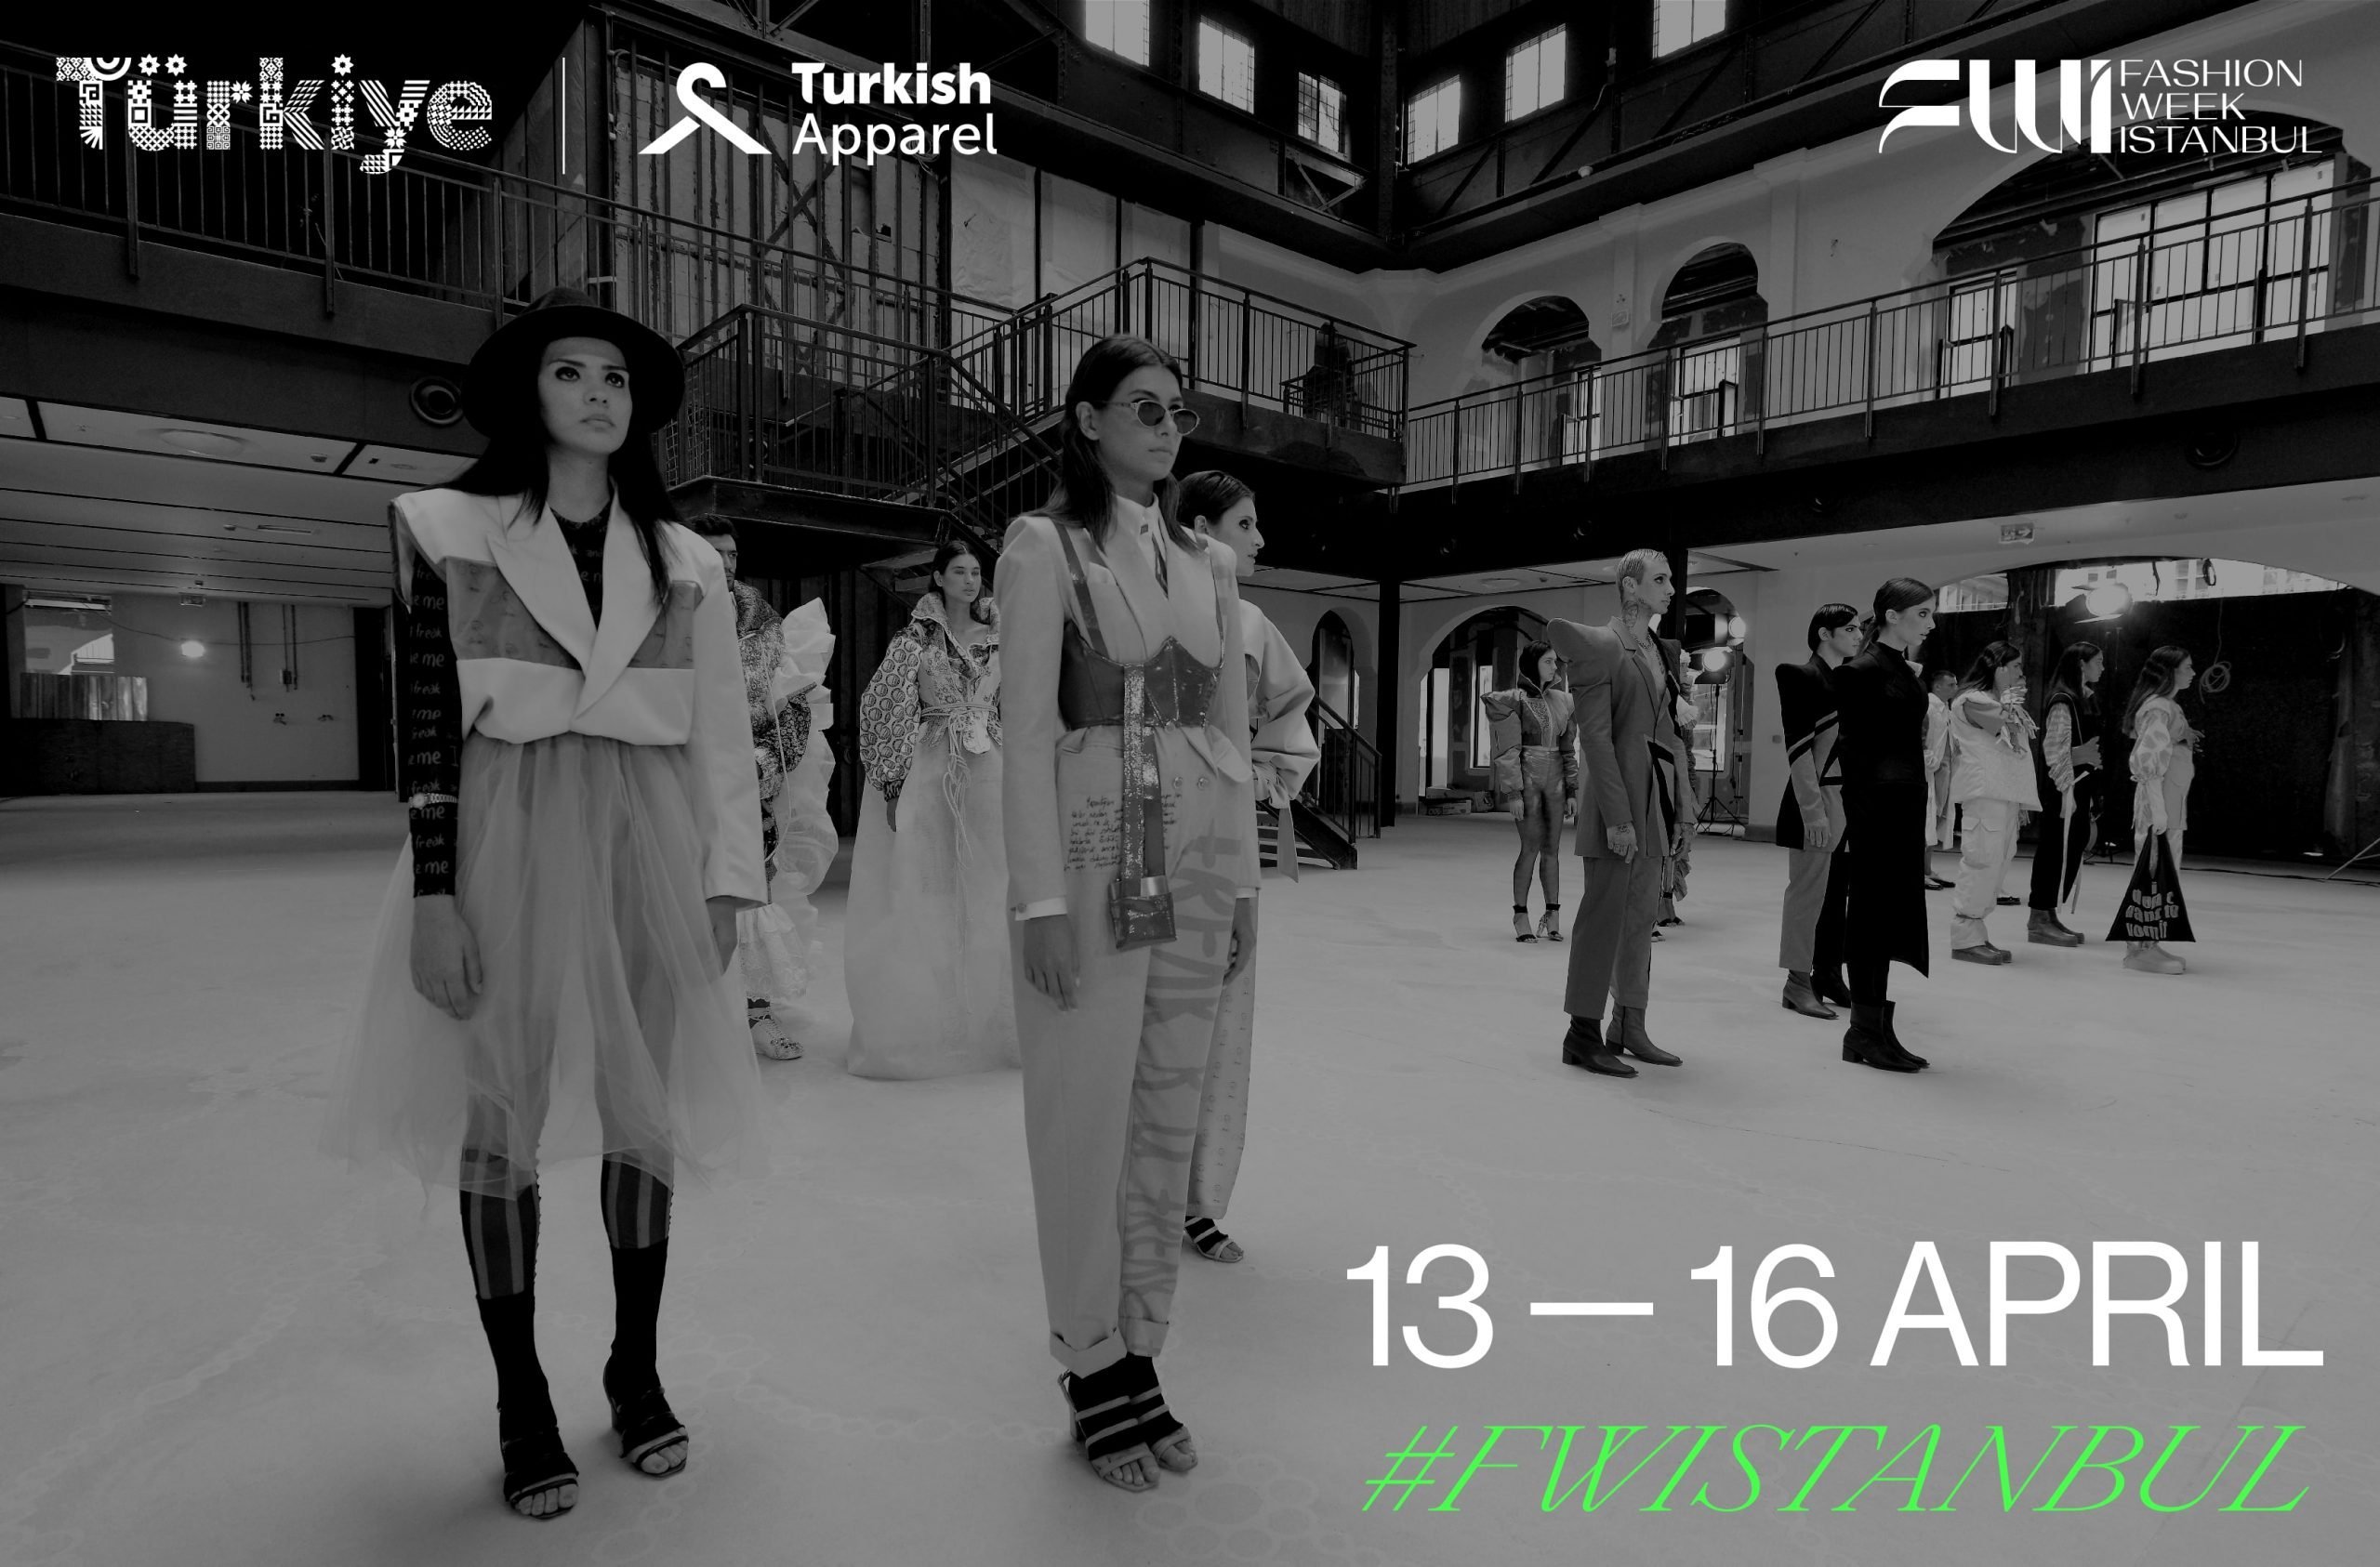 Fashion Week Istanbul 